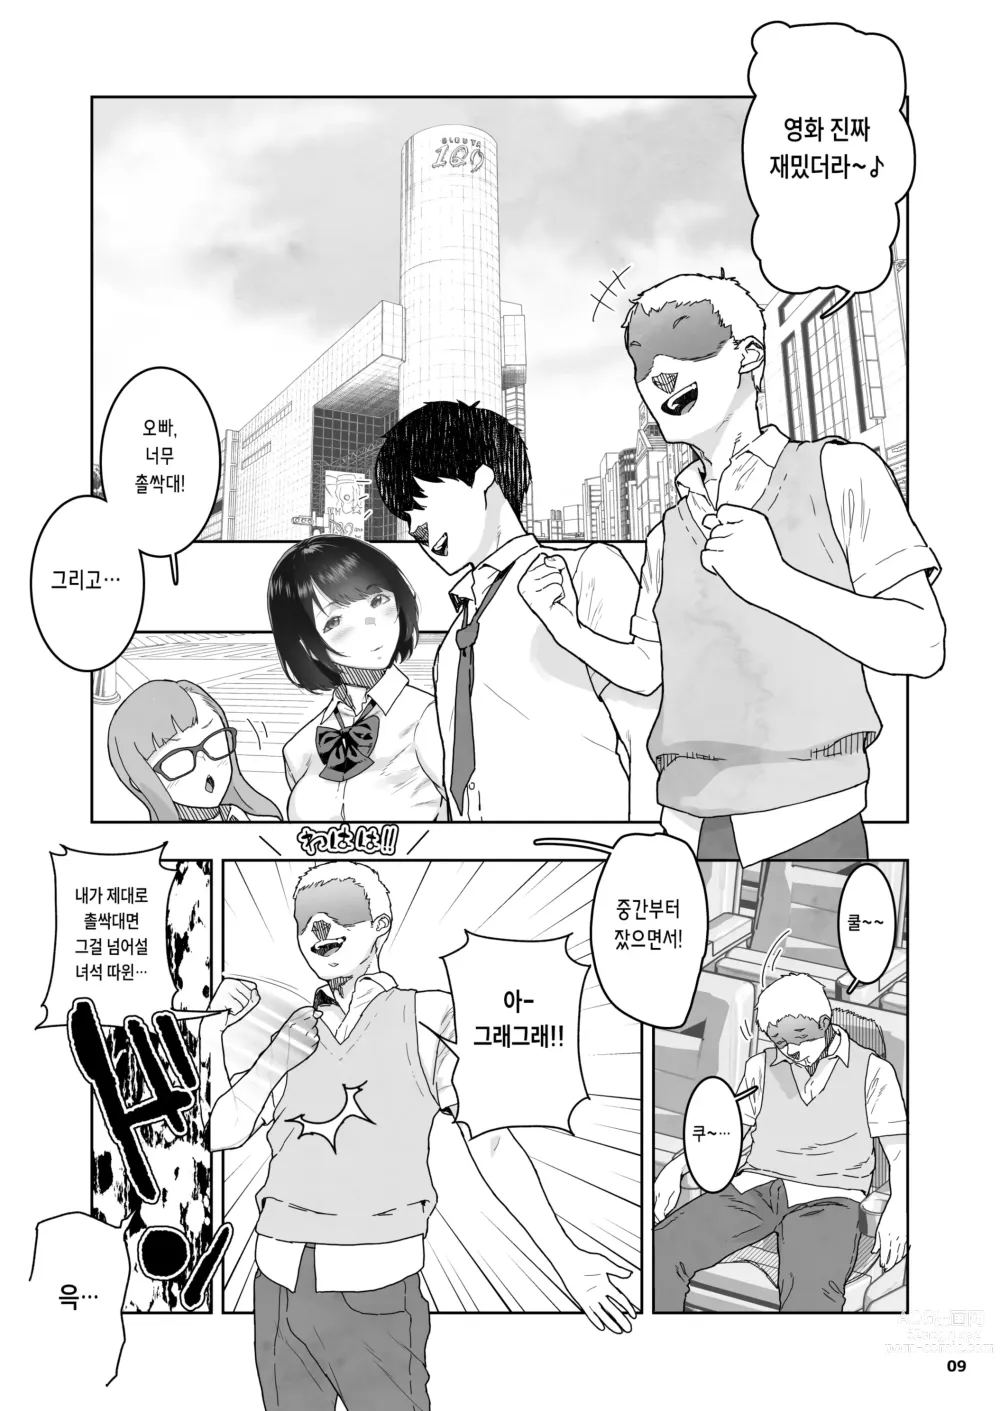 Page 9 of doujinshi 친구의 마지막